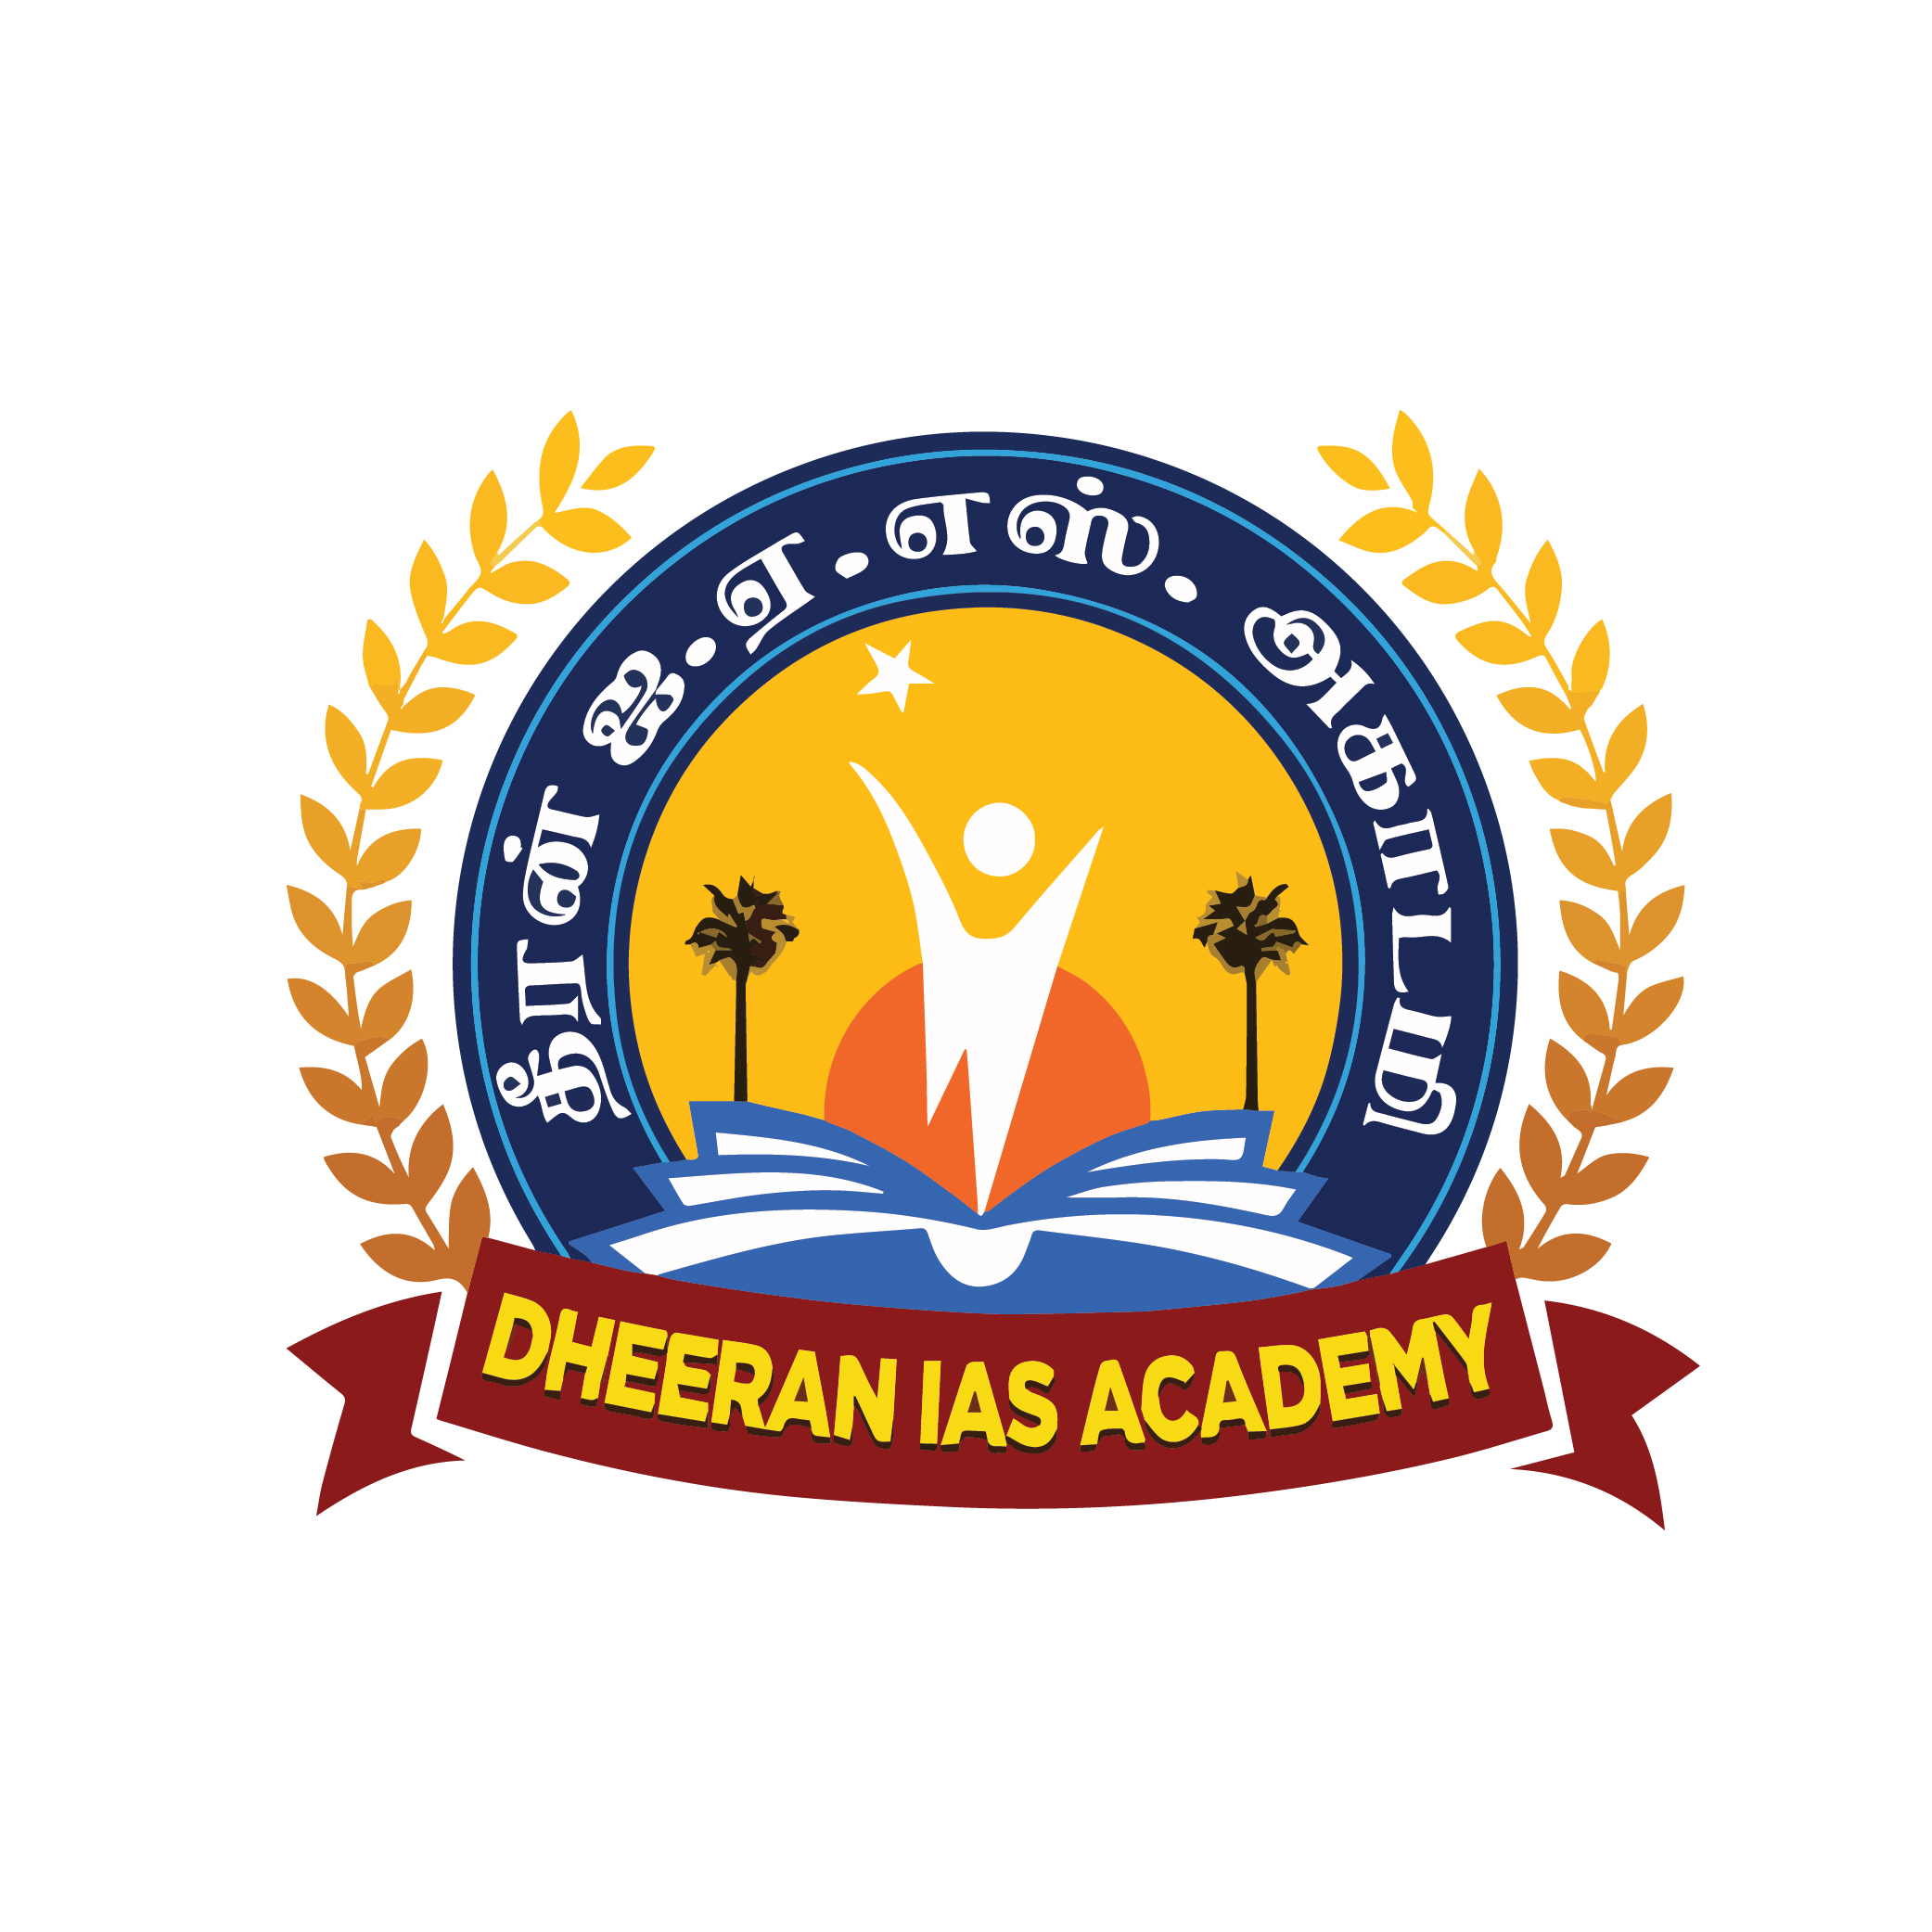 Best Ias Academy In Coimbatore Dheeran Ias Academy 17025493479